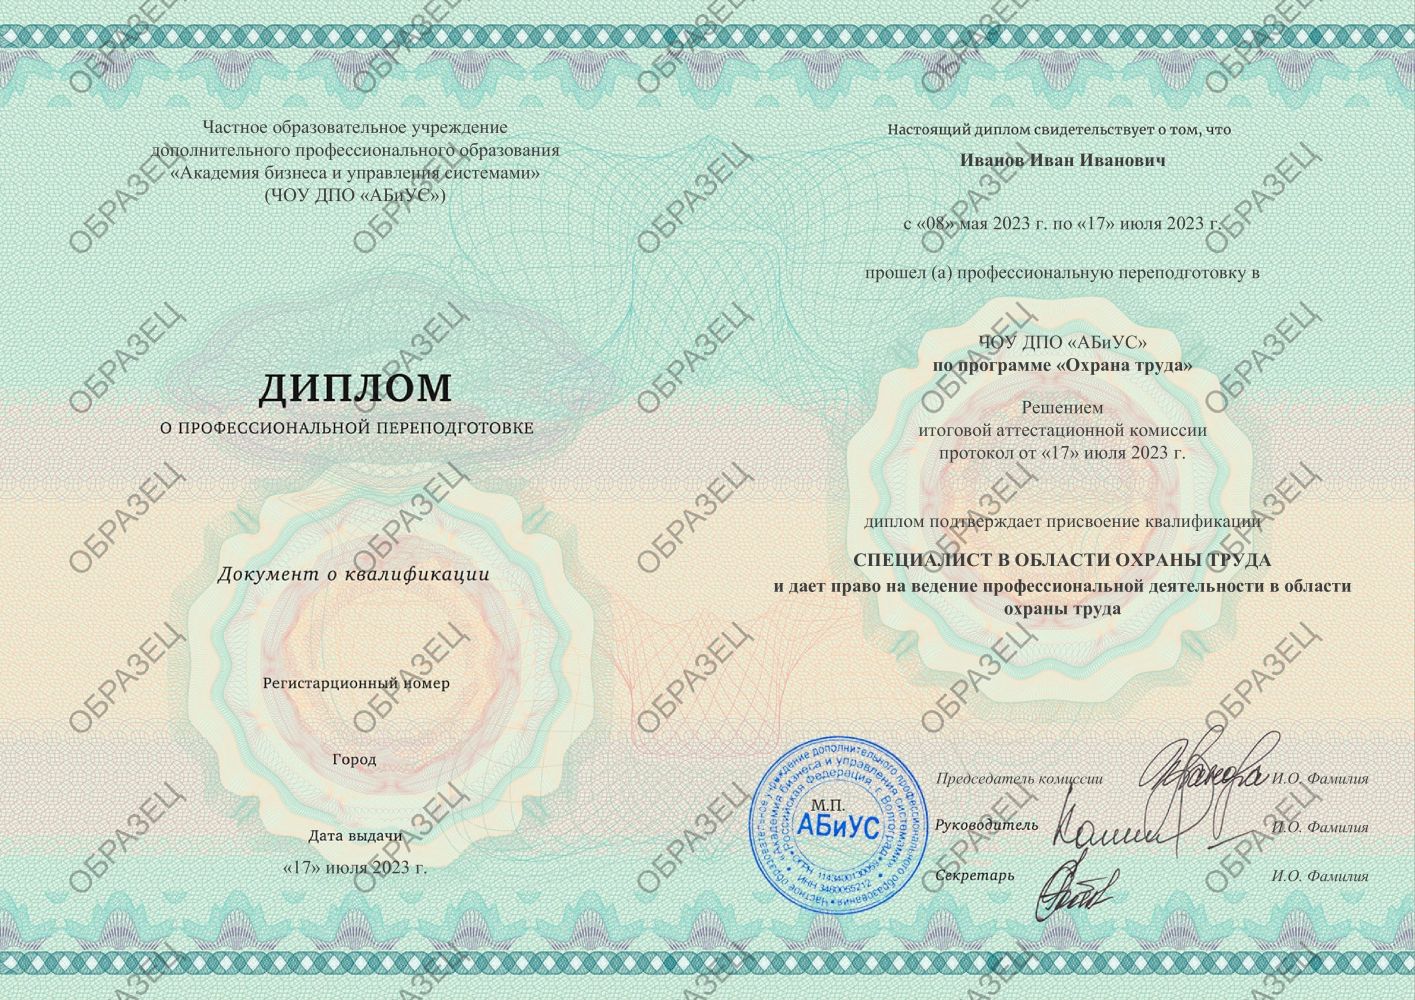 Диплом Охрана труда 260 часов 14375 руб.